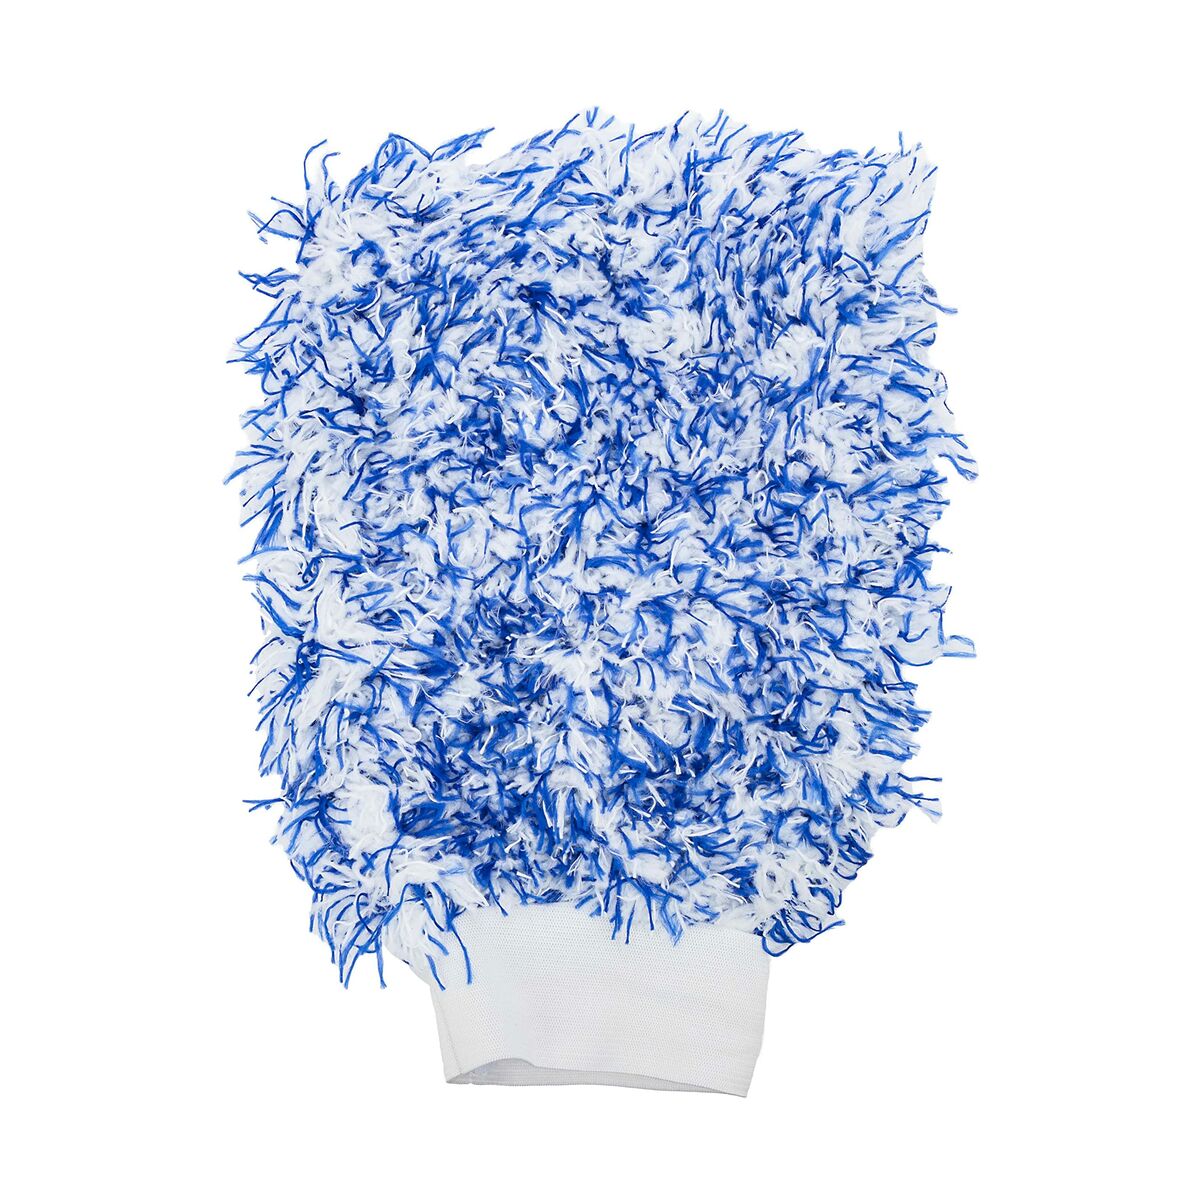 Microfibre Cleaning Tissu motul mtl111022 Gant lavable en coton bleu / blanc, ils ne grattent pas ou n'endommagent pas les surfaces